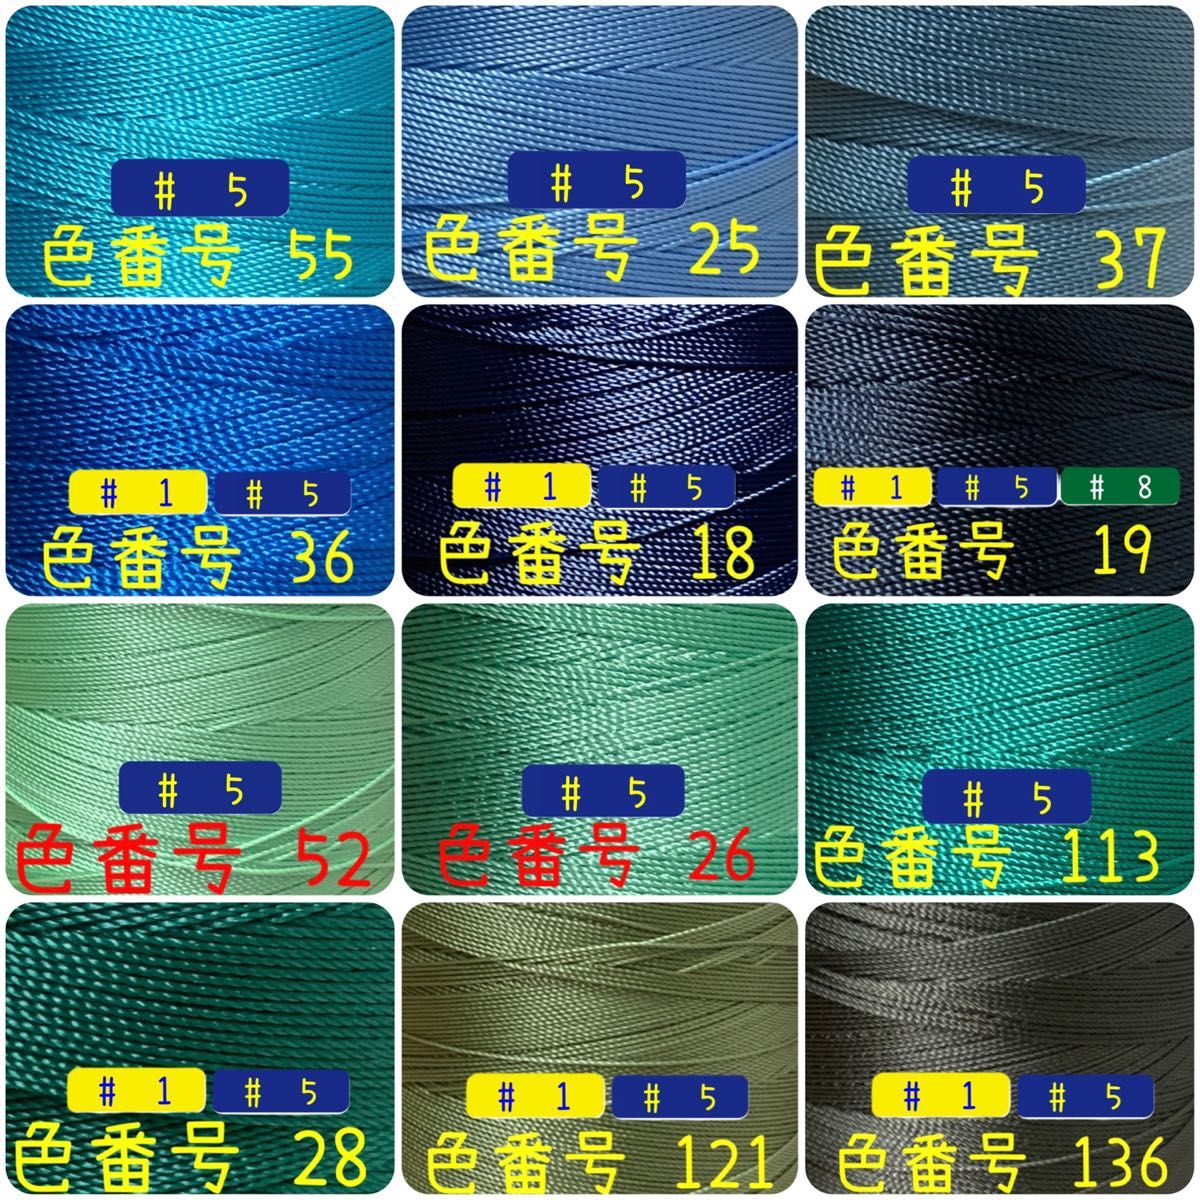 【1点】ビニモMBT #1 #5 #8 レザークラフト手縫い糸